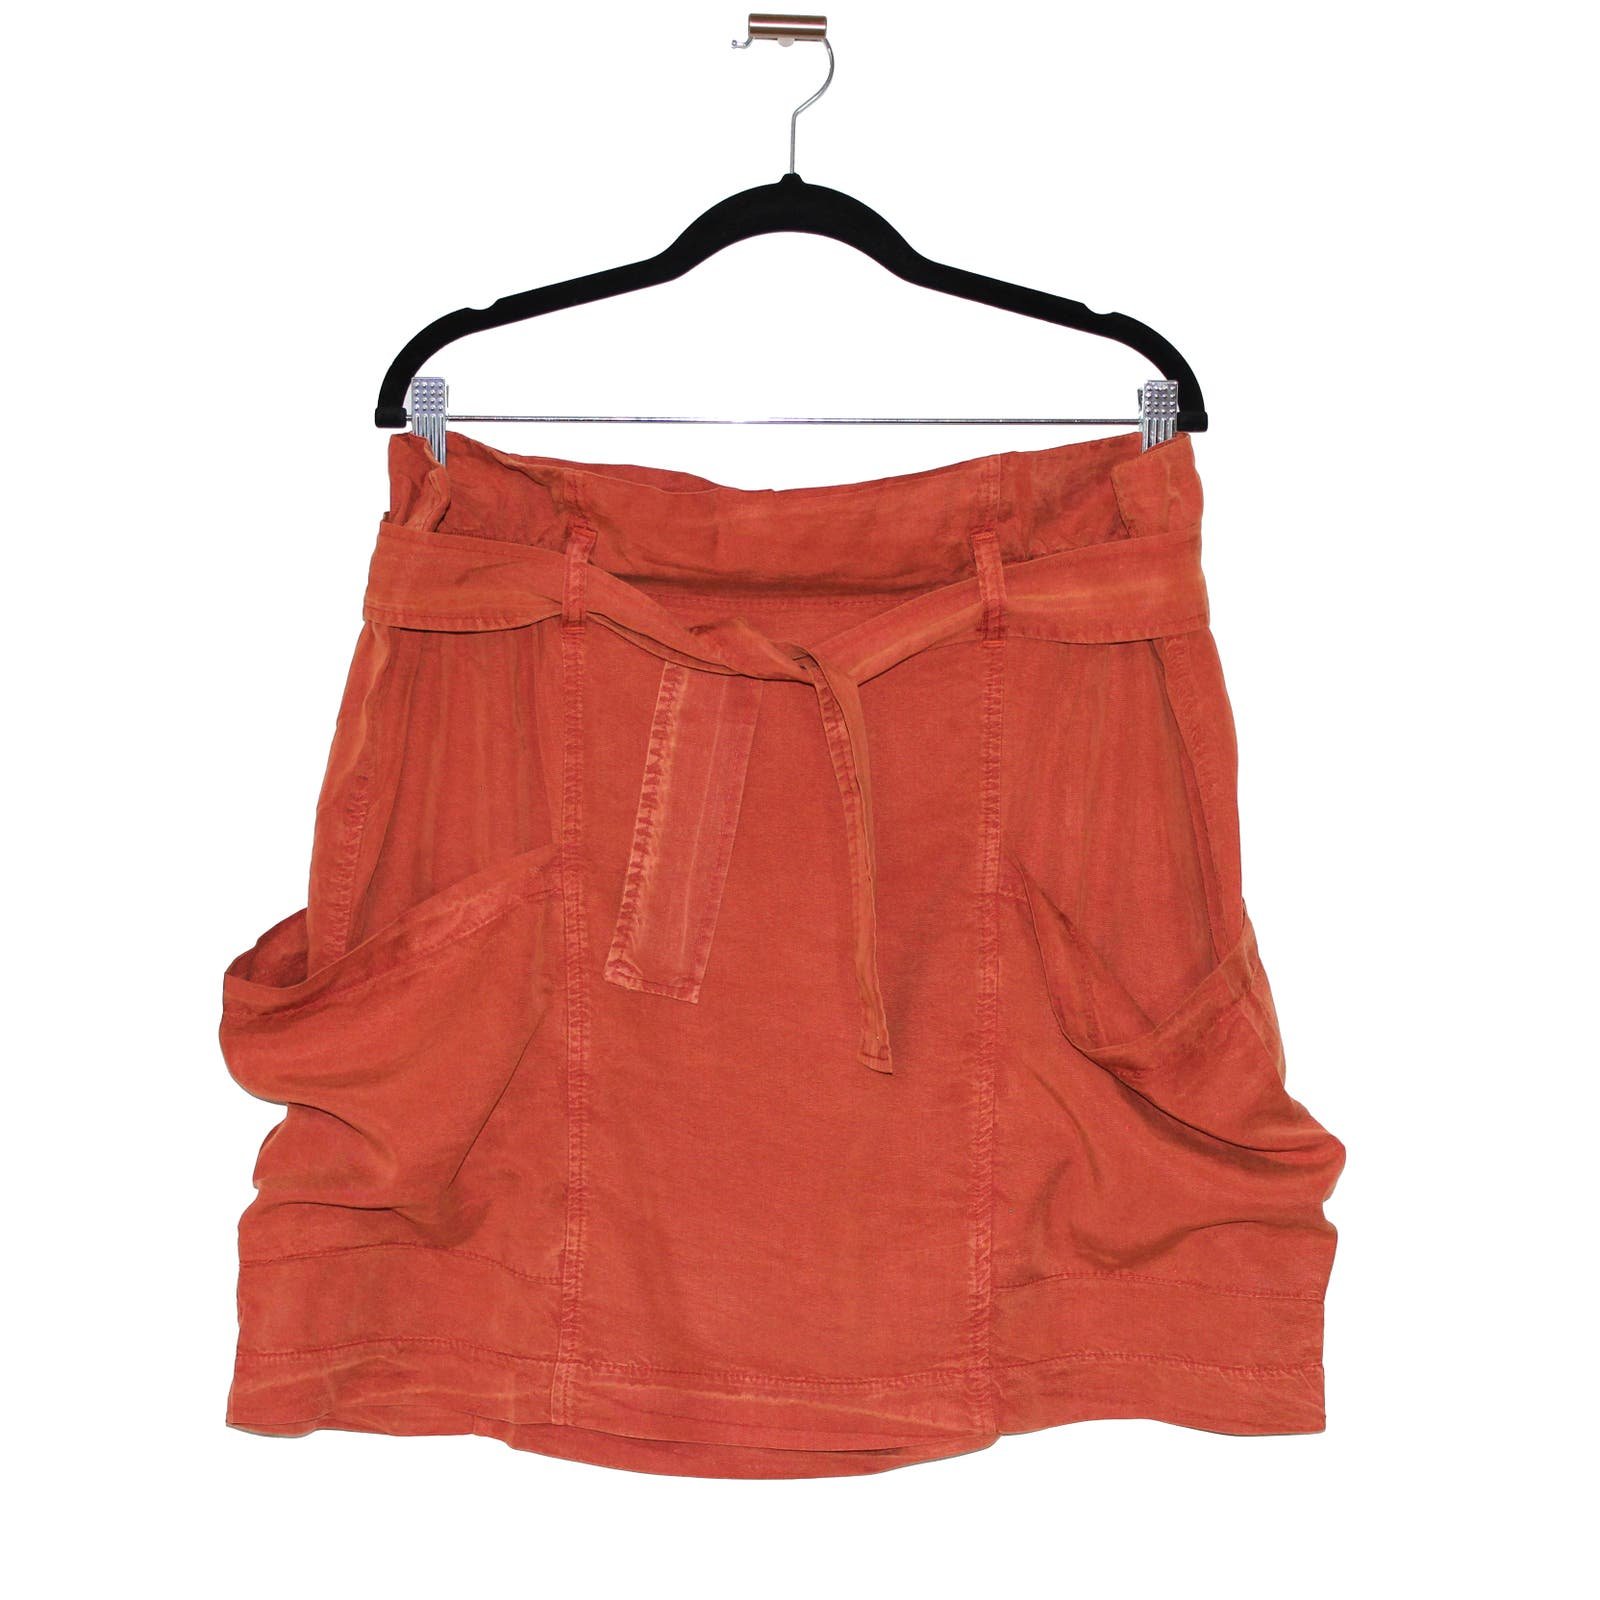 Discounted Anthropologie Nantes Mini Skirt Orange Size 